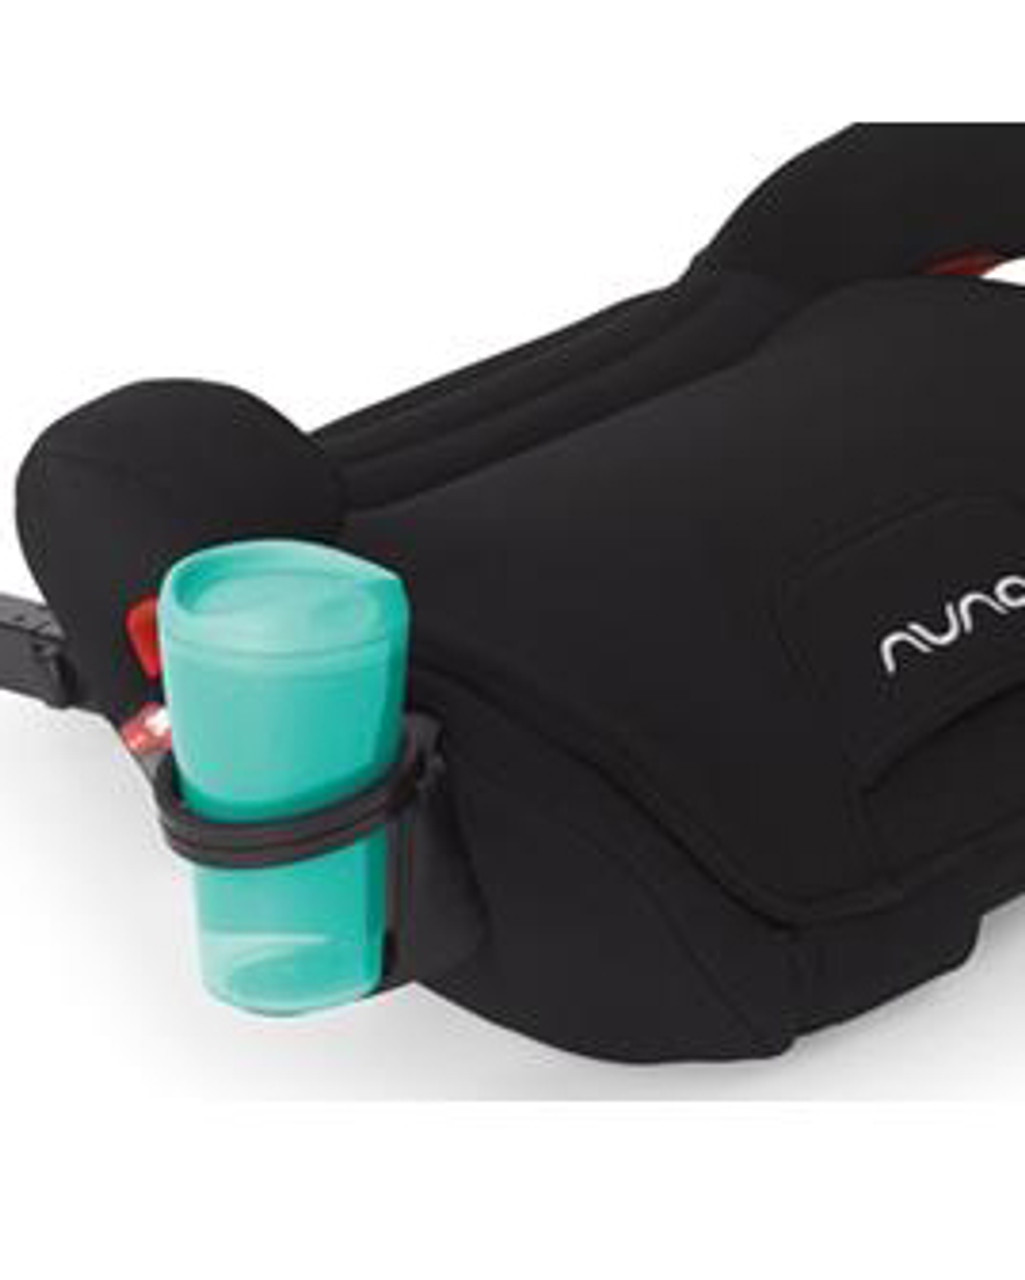 nuna cup holder for stroller